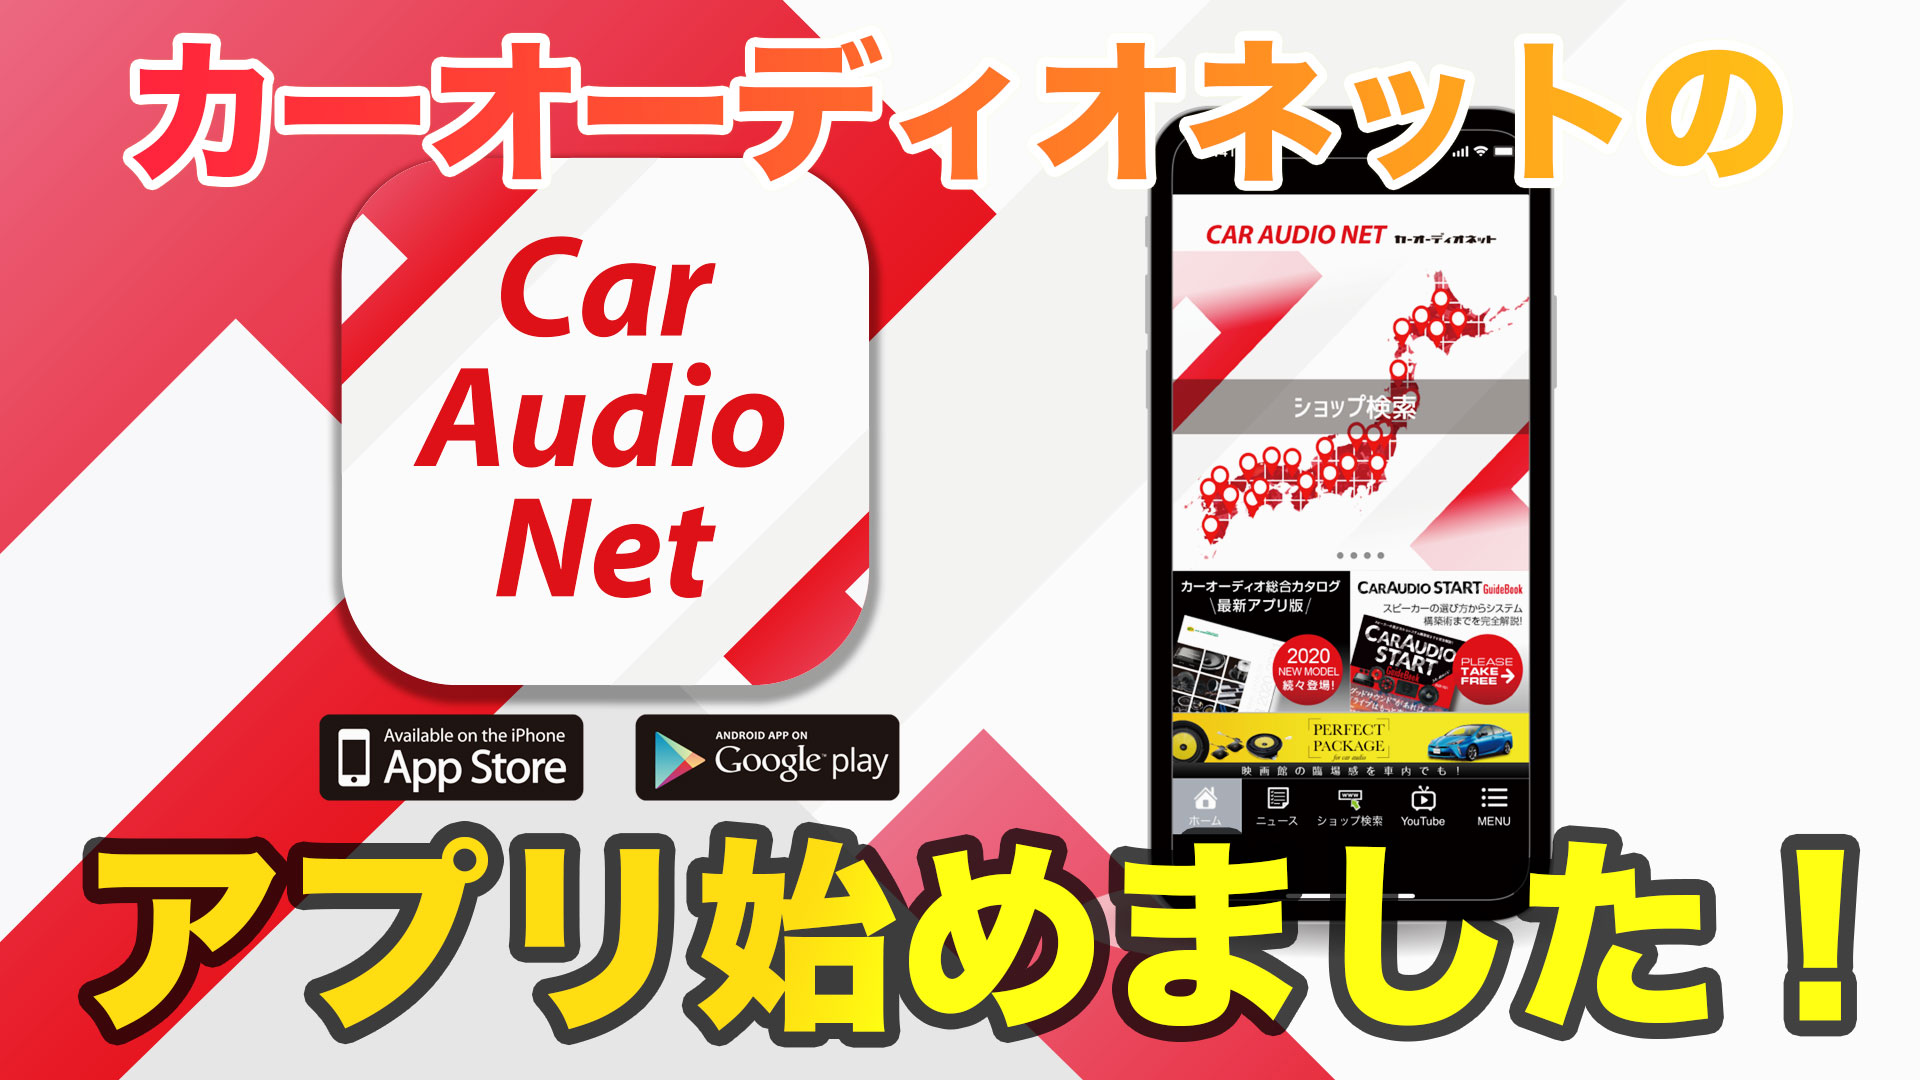 Car Audio Net カーオーディオネット 公式アプリをダウンロードしよう Car Audio Net